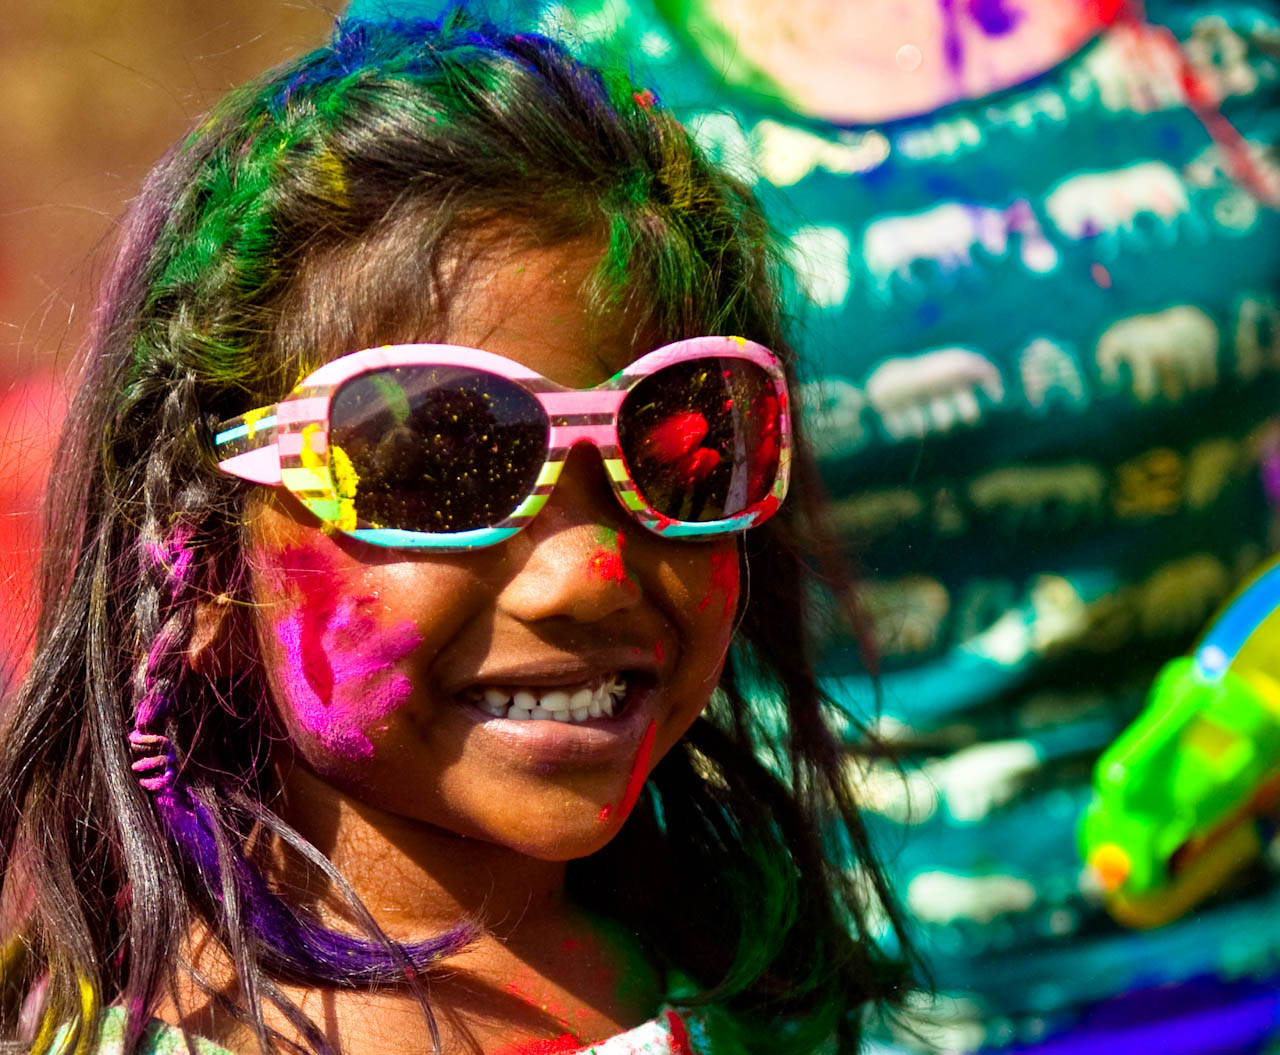 holi festival5 The Most Colorful Holi Festival